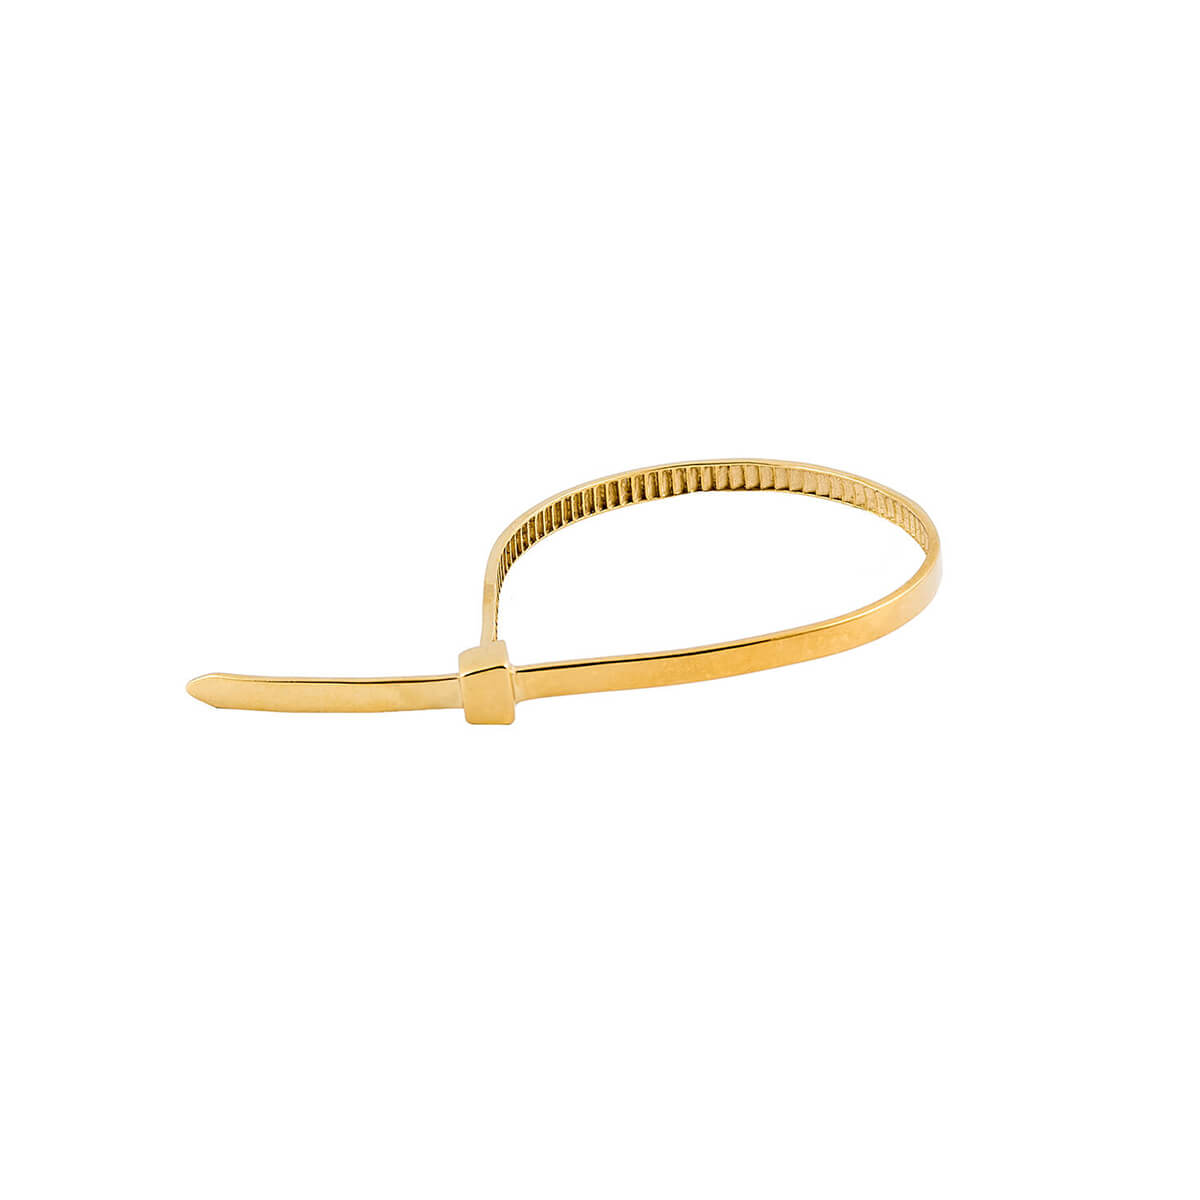 The Golden Flange Bracelet | Bracelets | Glenda López